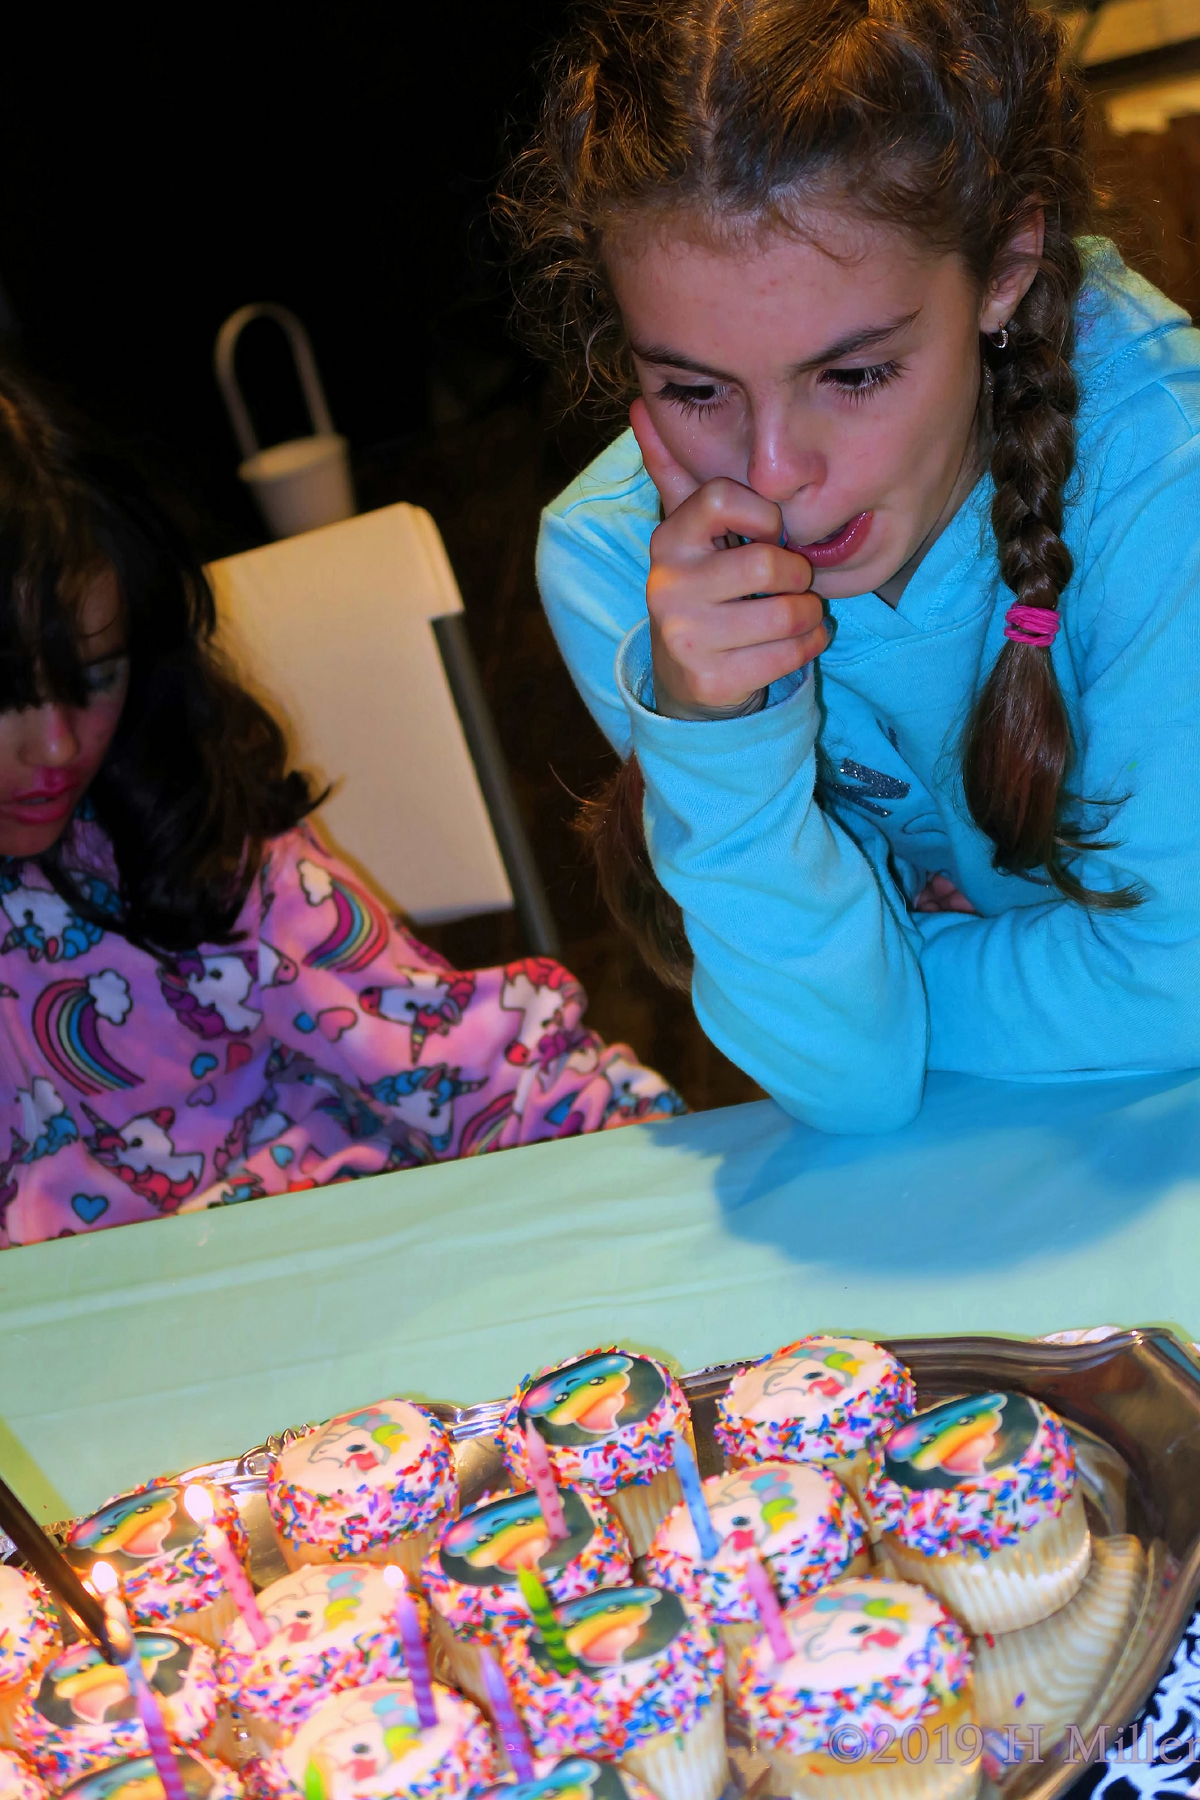 Singing And Sharing! Birthday Cupcakes At The Kids Spa! 1